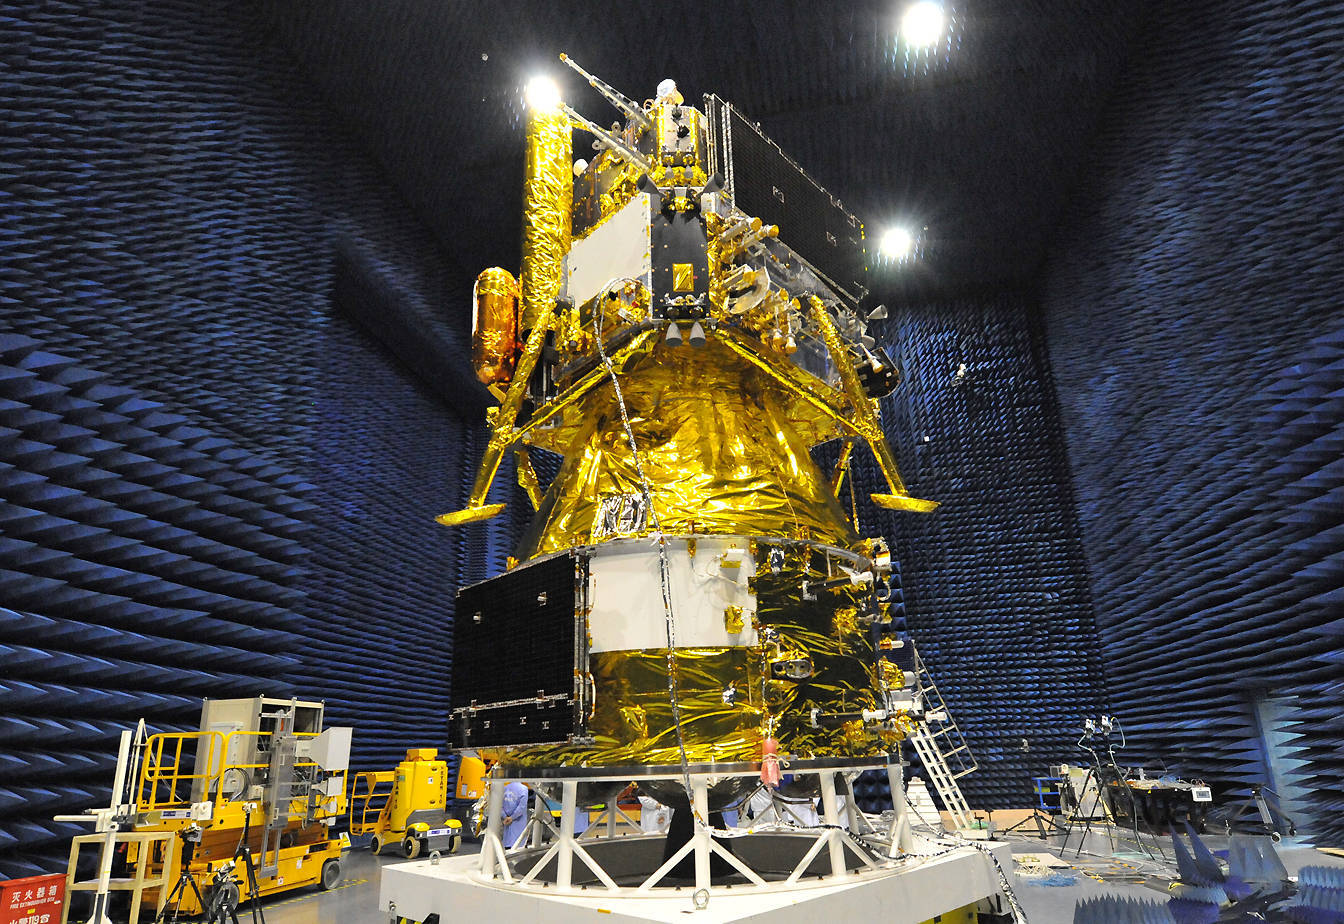 嫦娥六号完成月球轨道交会对接与在轨样品转移